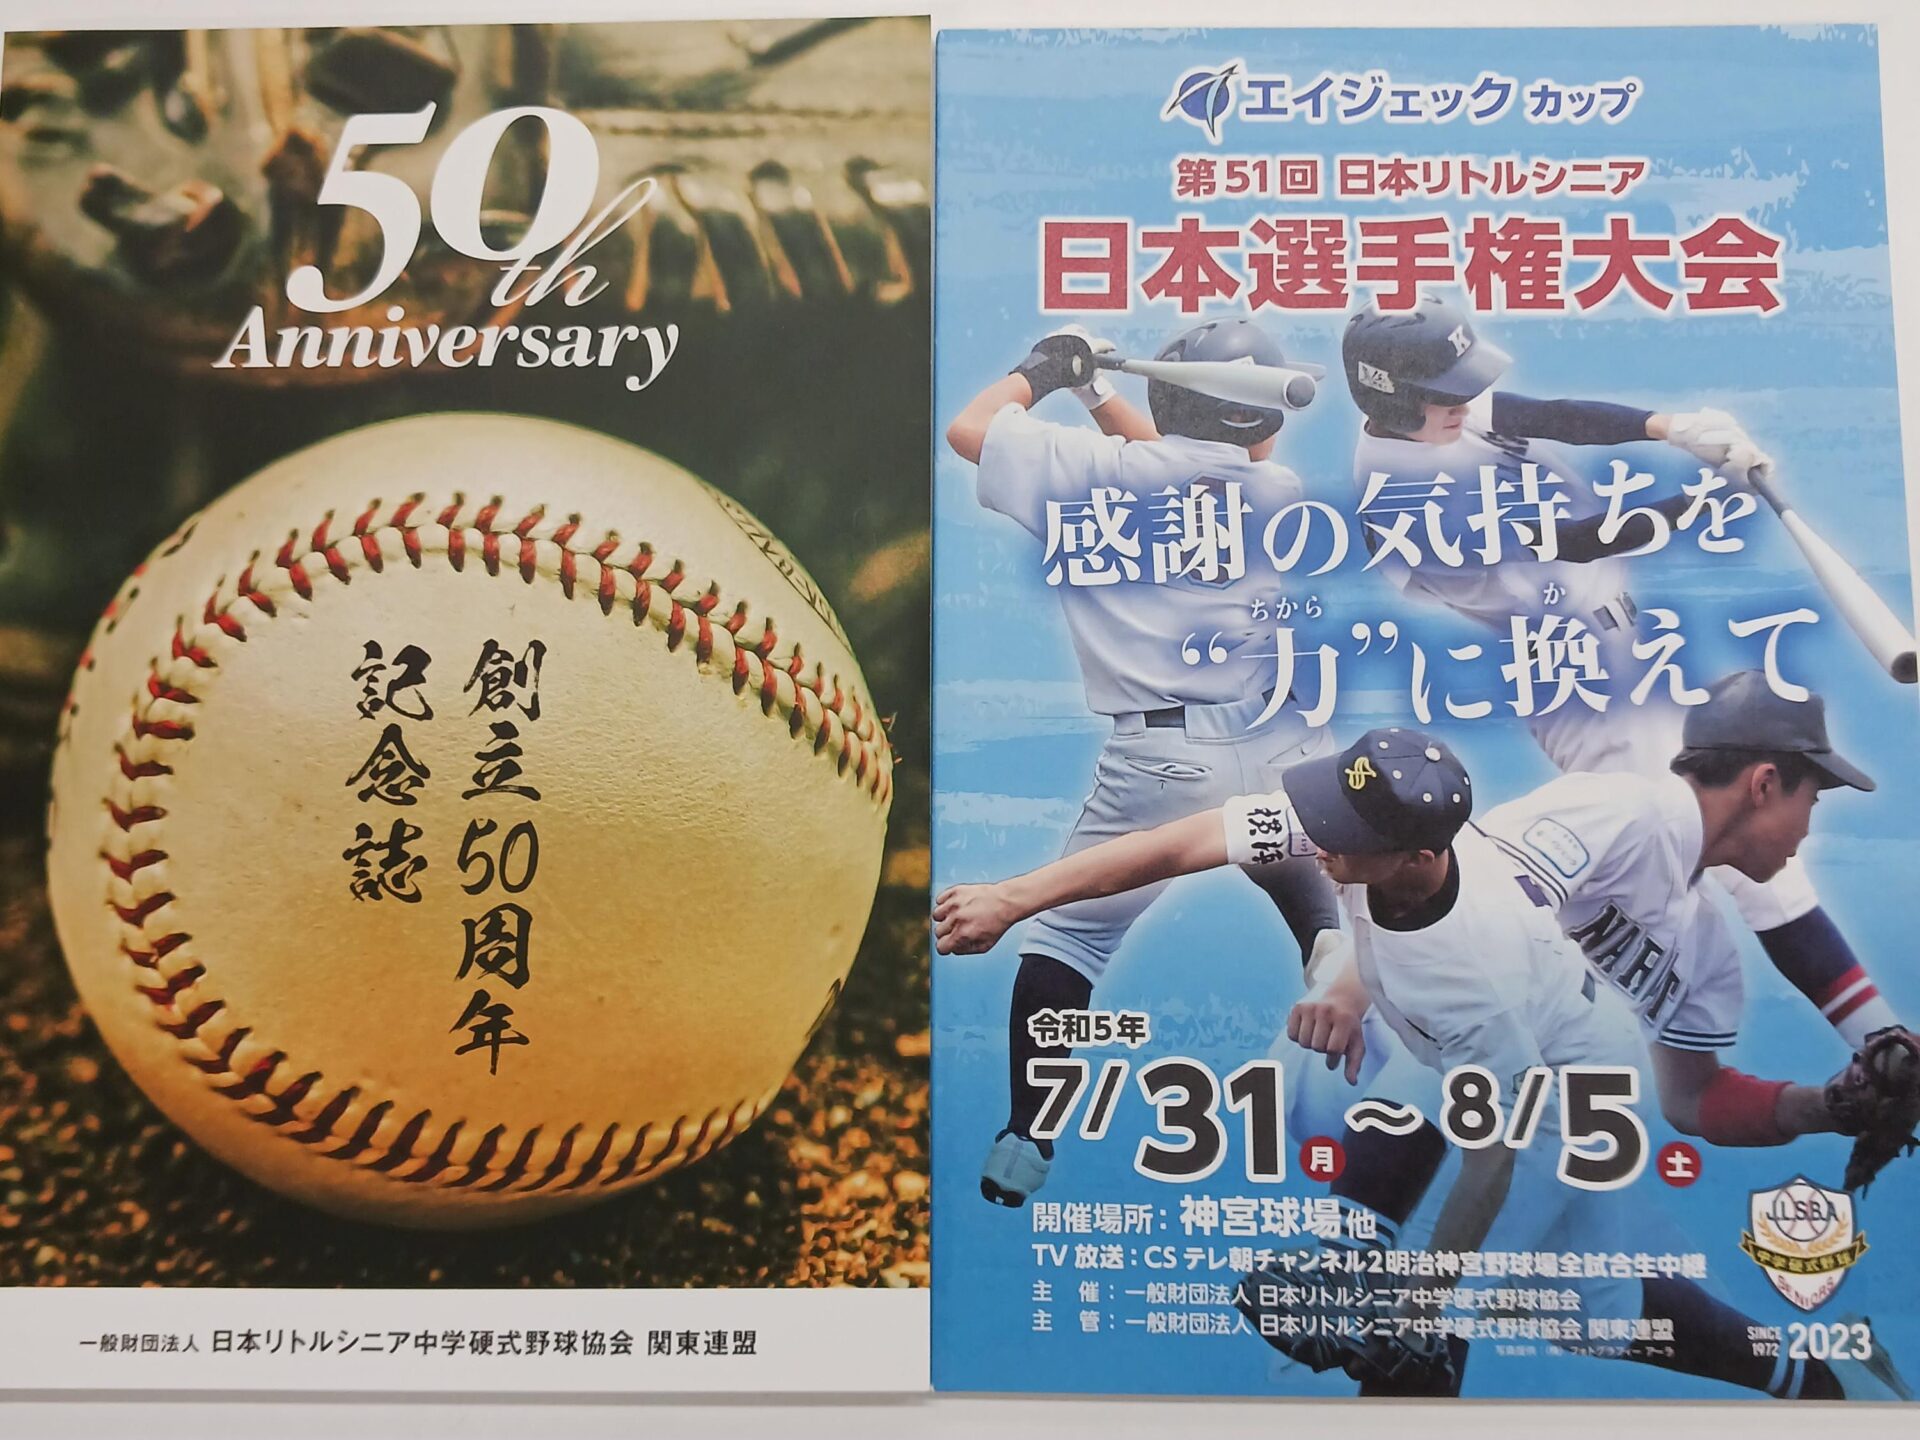 【硬式野球】エイジェックカップ第51回日本選手権大会